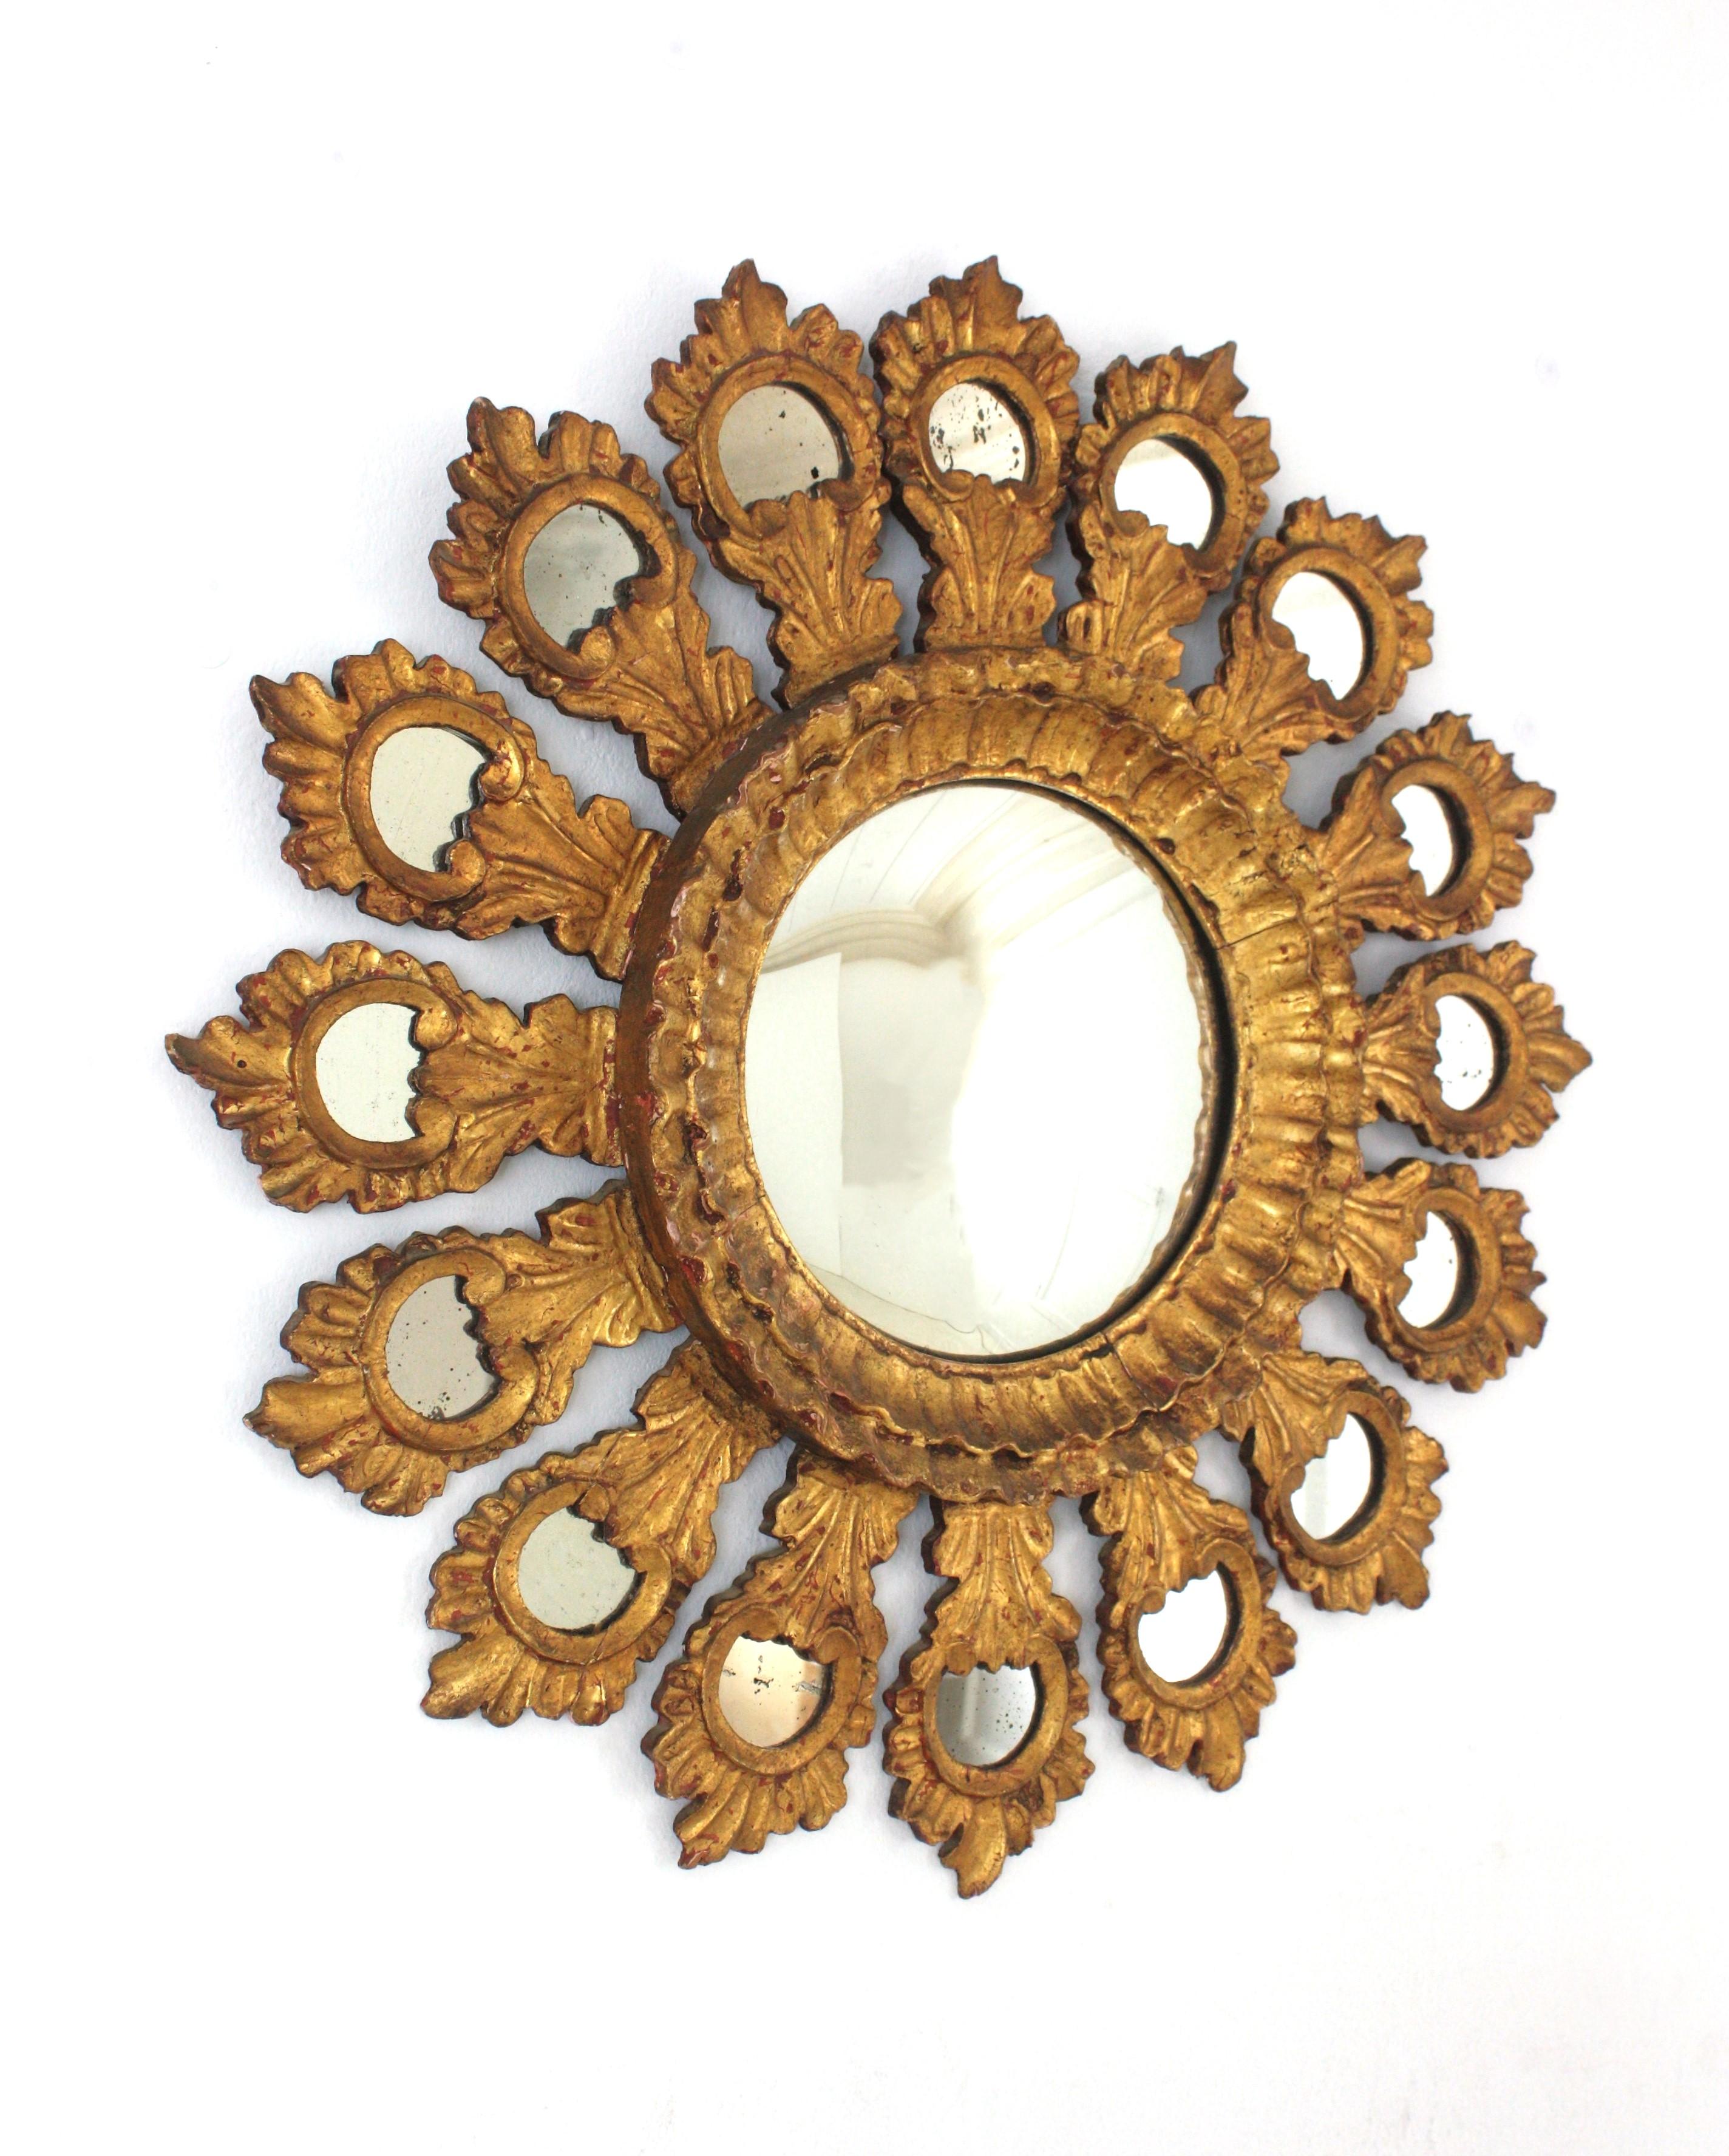 Miroir convexe en bois doré avec incrustations de miroir, Espagne, années 1930-1940.
Miroir unique en son genre en bois doré sculpté à la main avec verre convexe.
Une trouvaille rare.
Ce miroir mural présente un cadre en bois doré lourdement